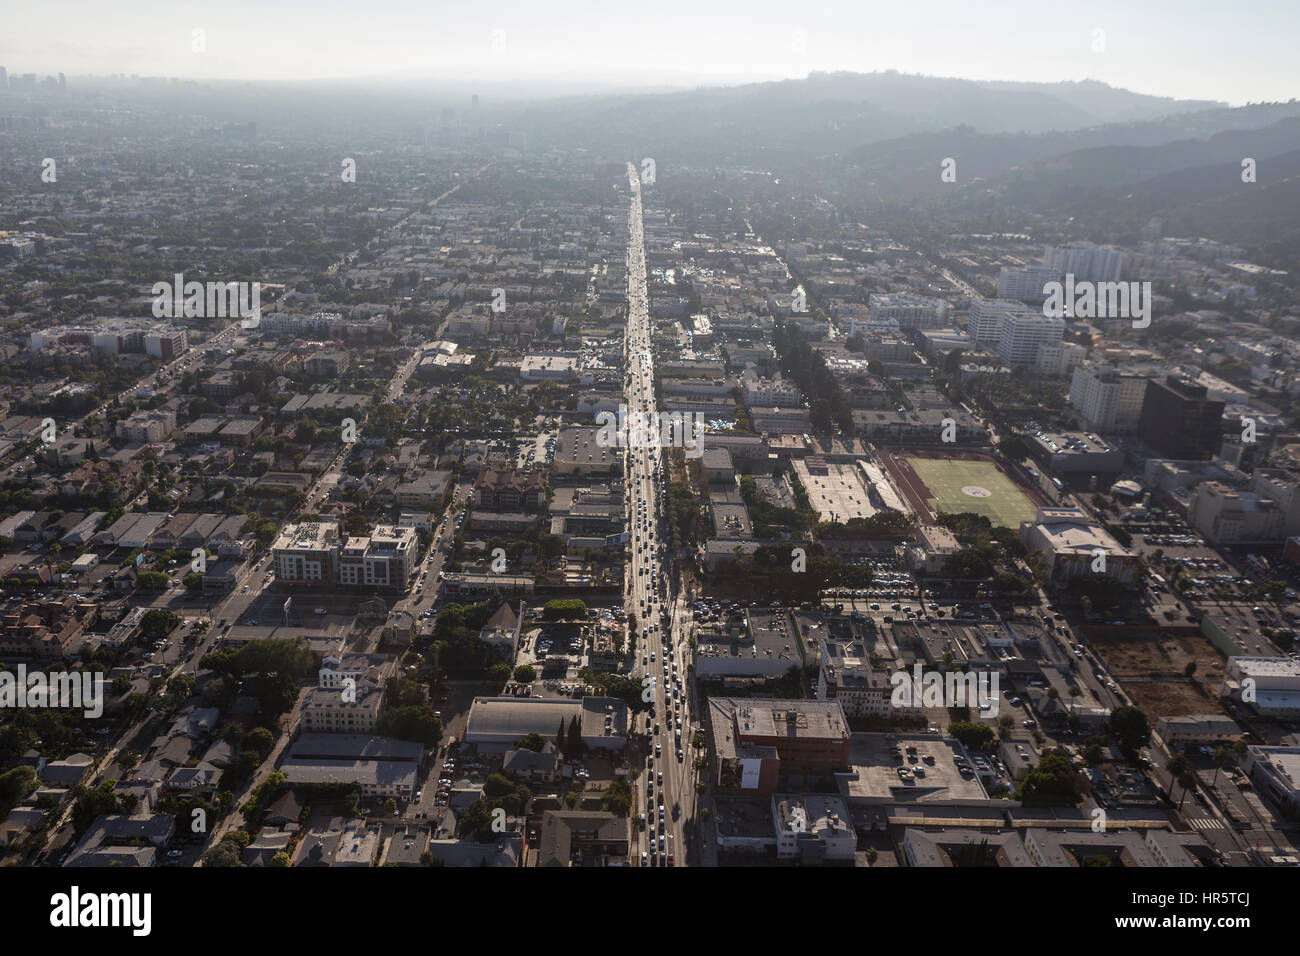 Los Angeles, Californie, USA - 6 août 2016 : Vue aérienne de smog d'épais sur Sunset Boulevard à Hollywood. Banque D'Images